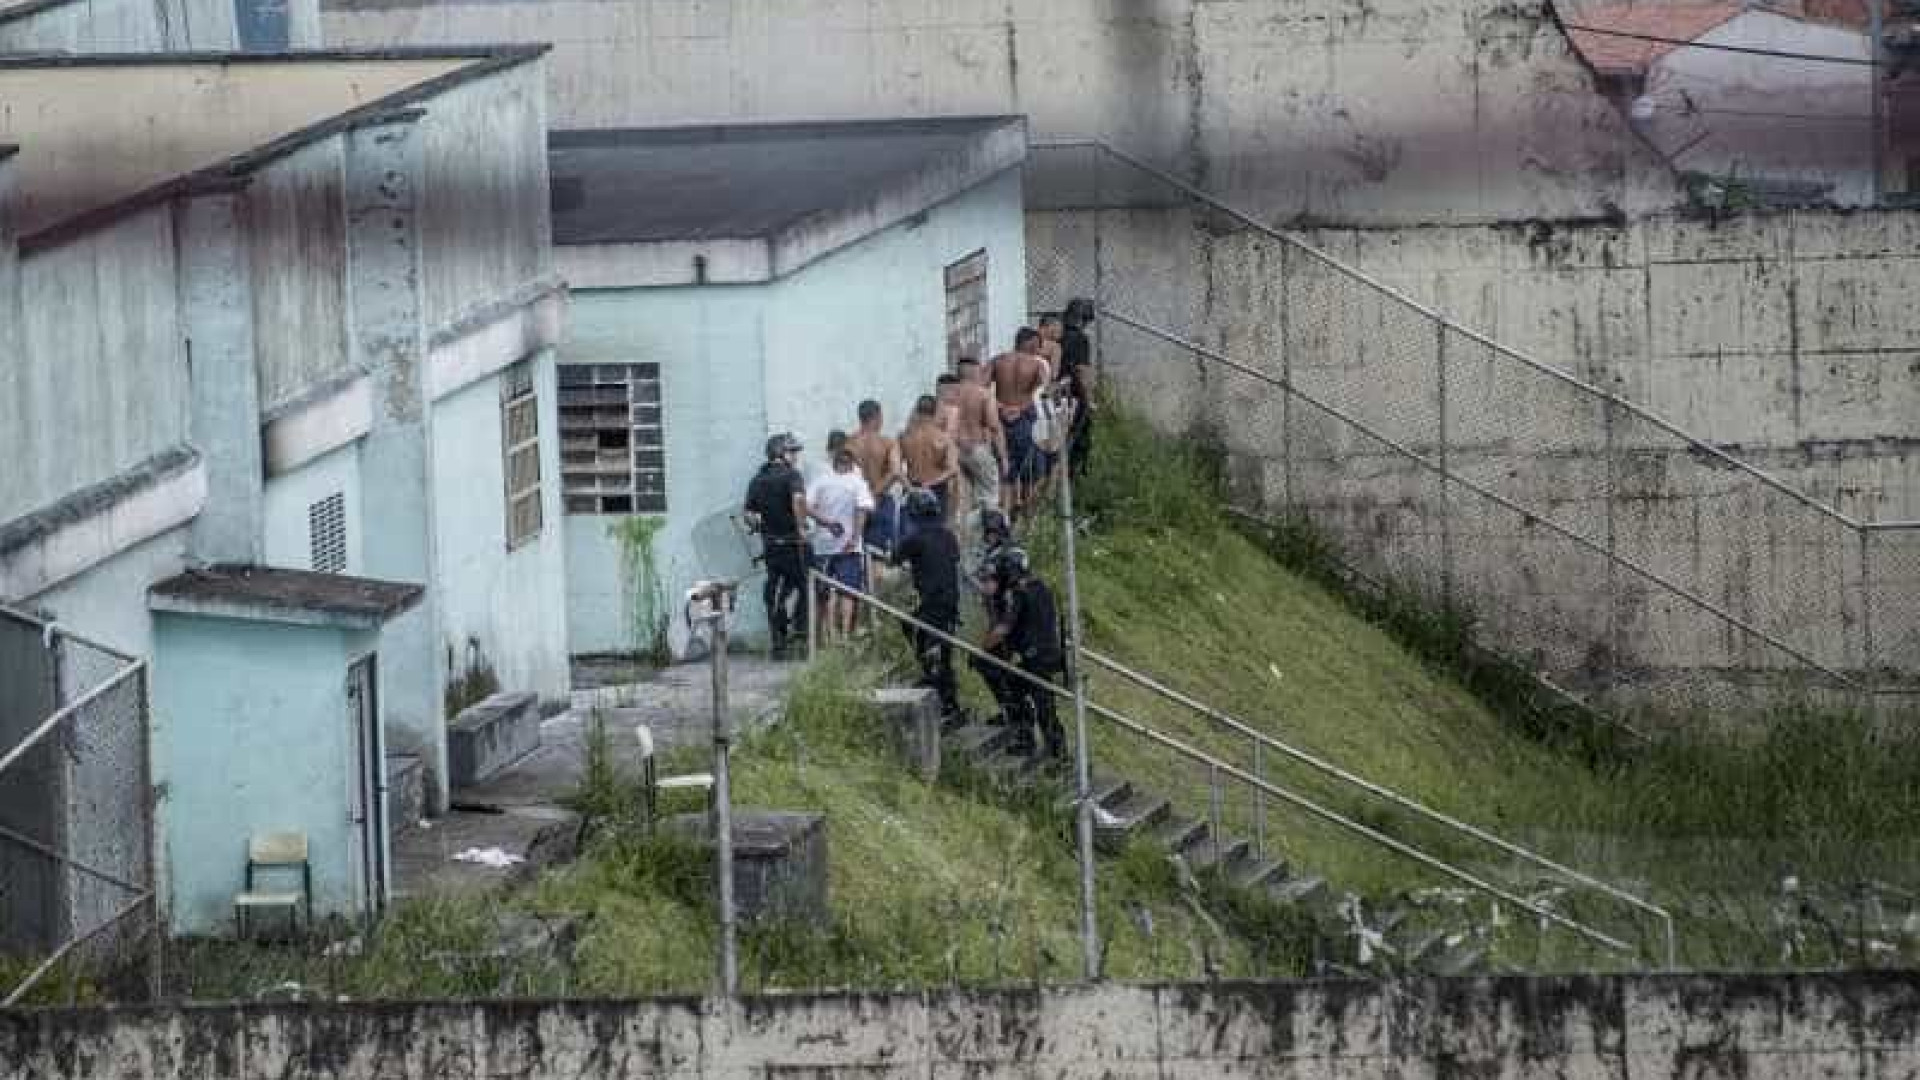 Menor detido em Itaquera ficará na Fundação Casa